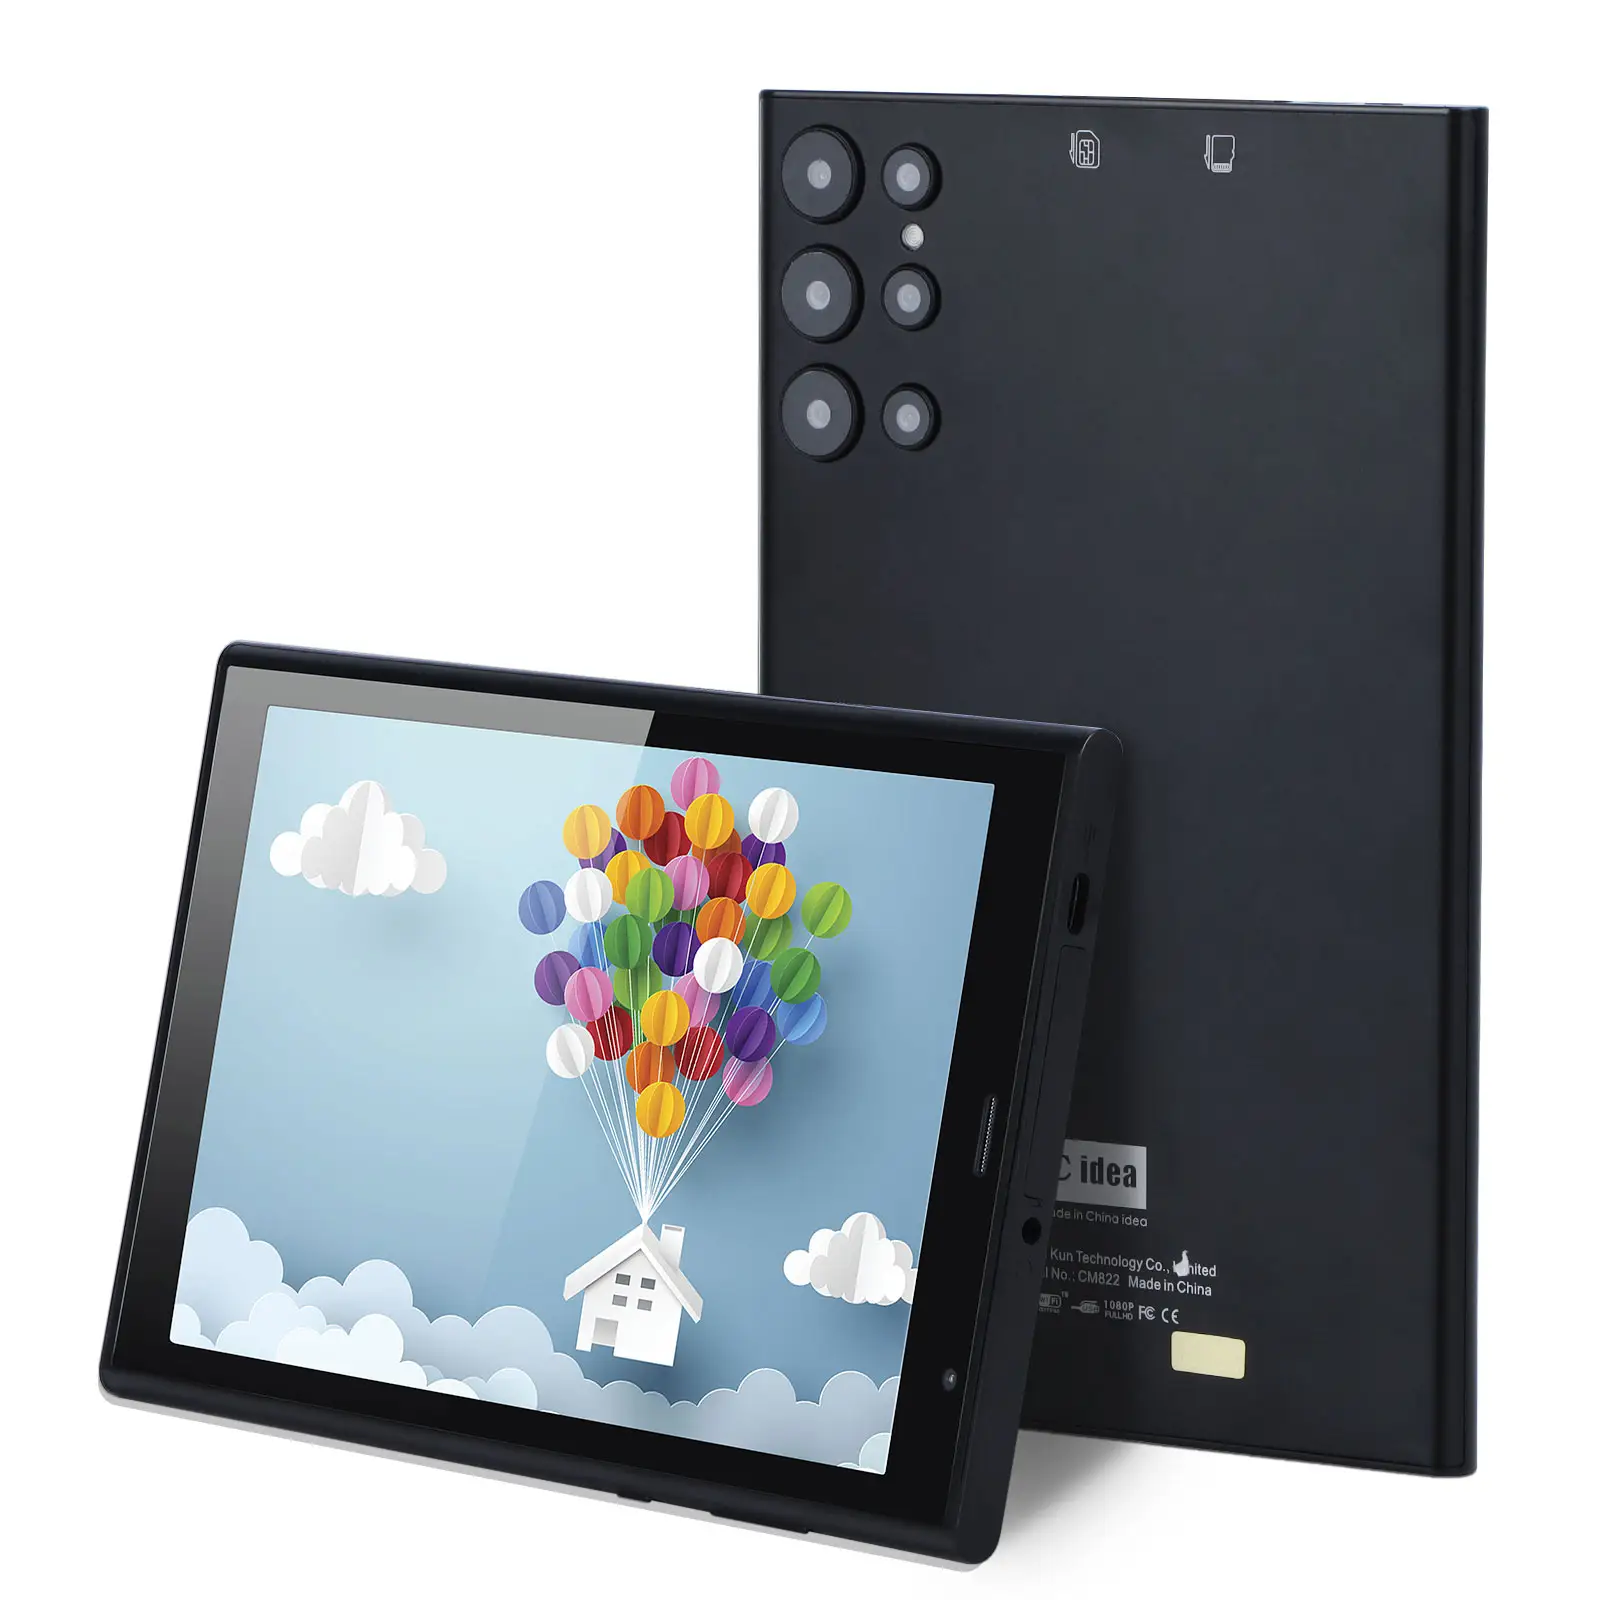 C idea производитель четырехъядерный 6 ГБ + 256 ГБ Wi-Fi планшет 8 дюймов планшет Android 12 для подростков развлечения с сим-картой (черный)